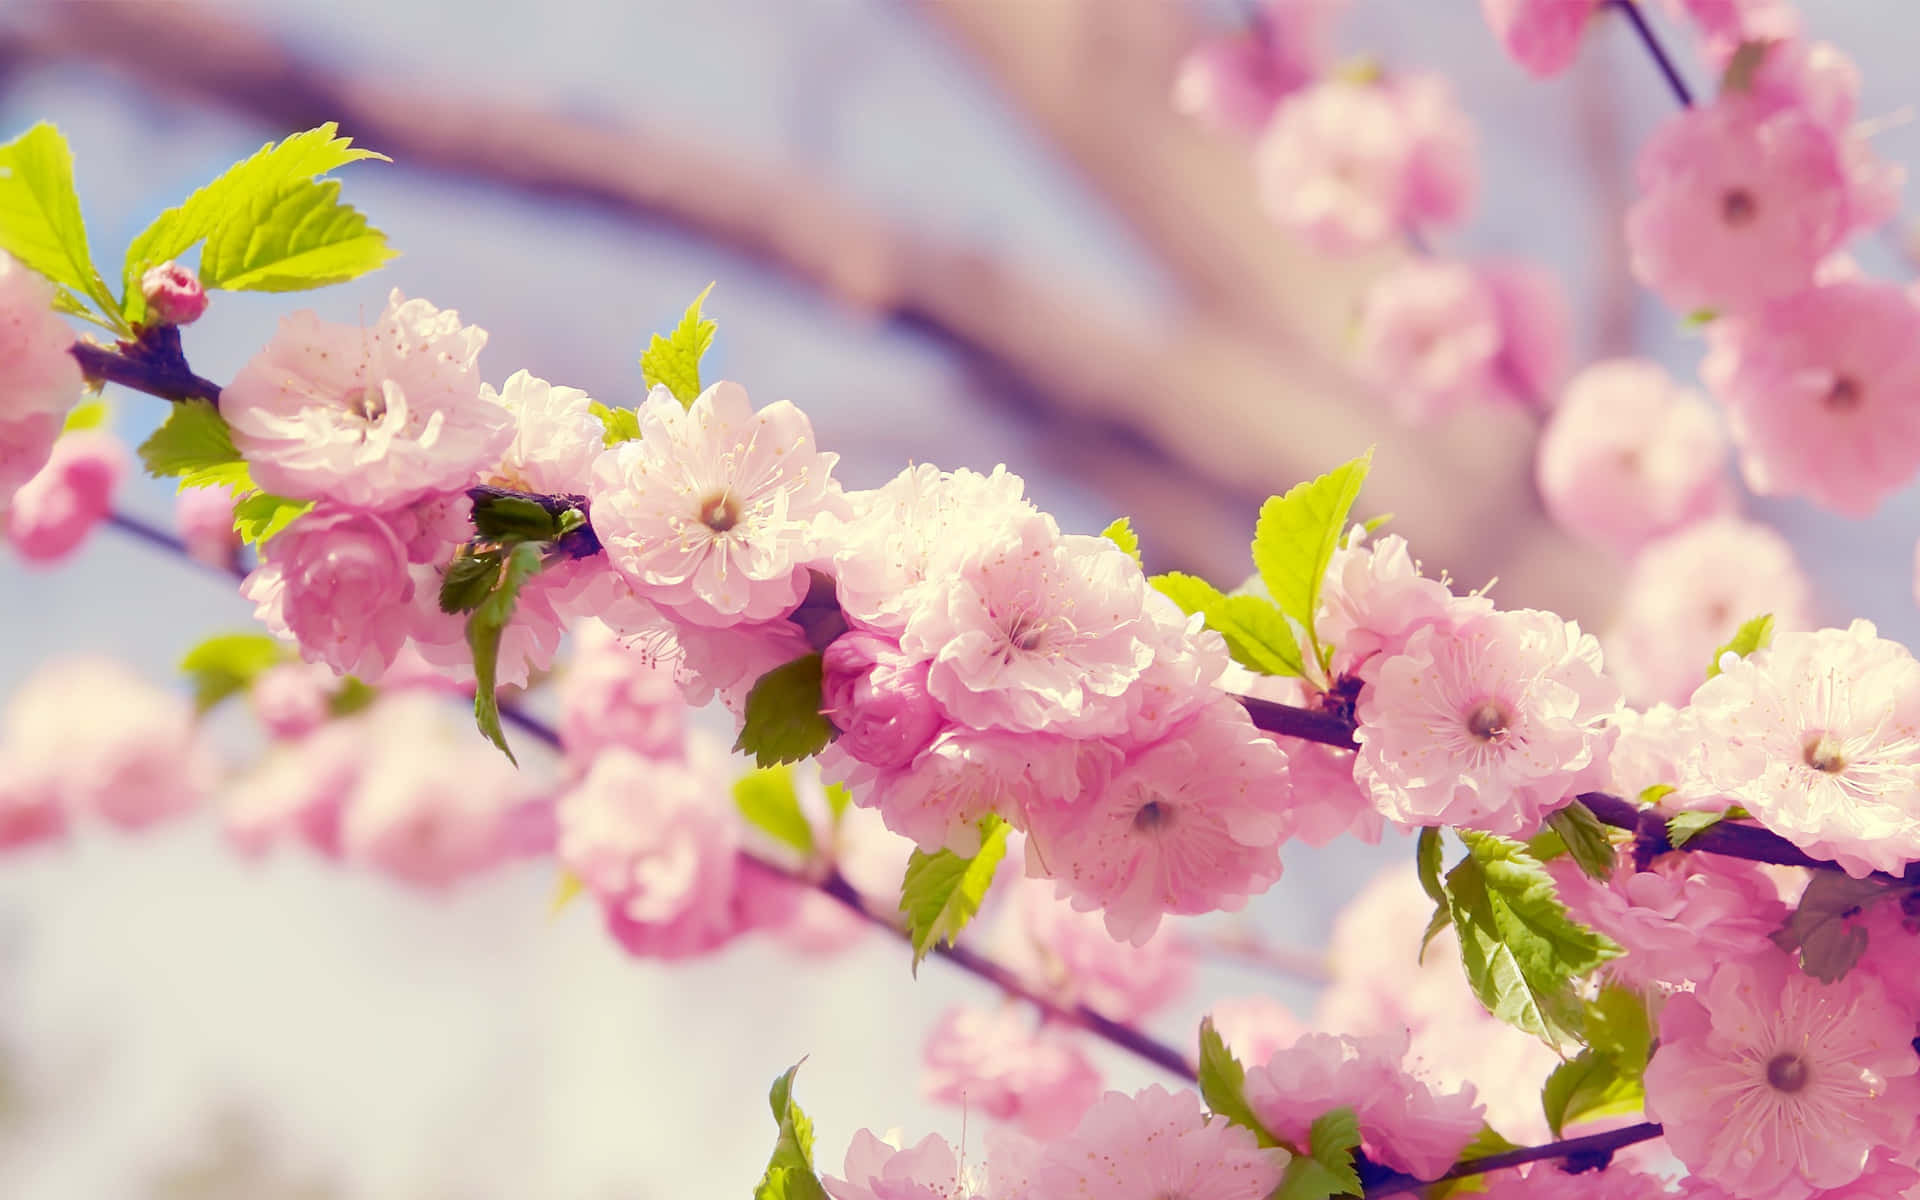 Njutav Den Vackra Skönheten I Denna Fantastiska Sakura-blomma! Wallpaper